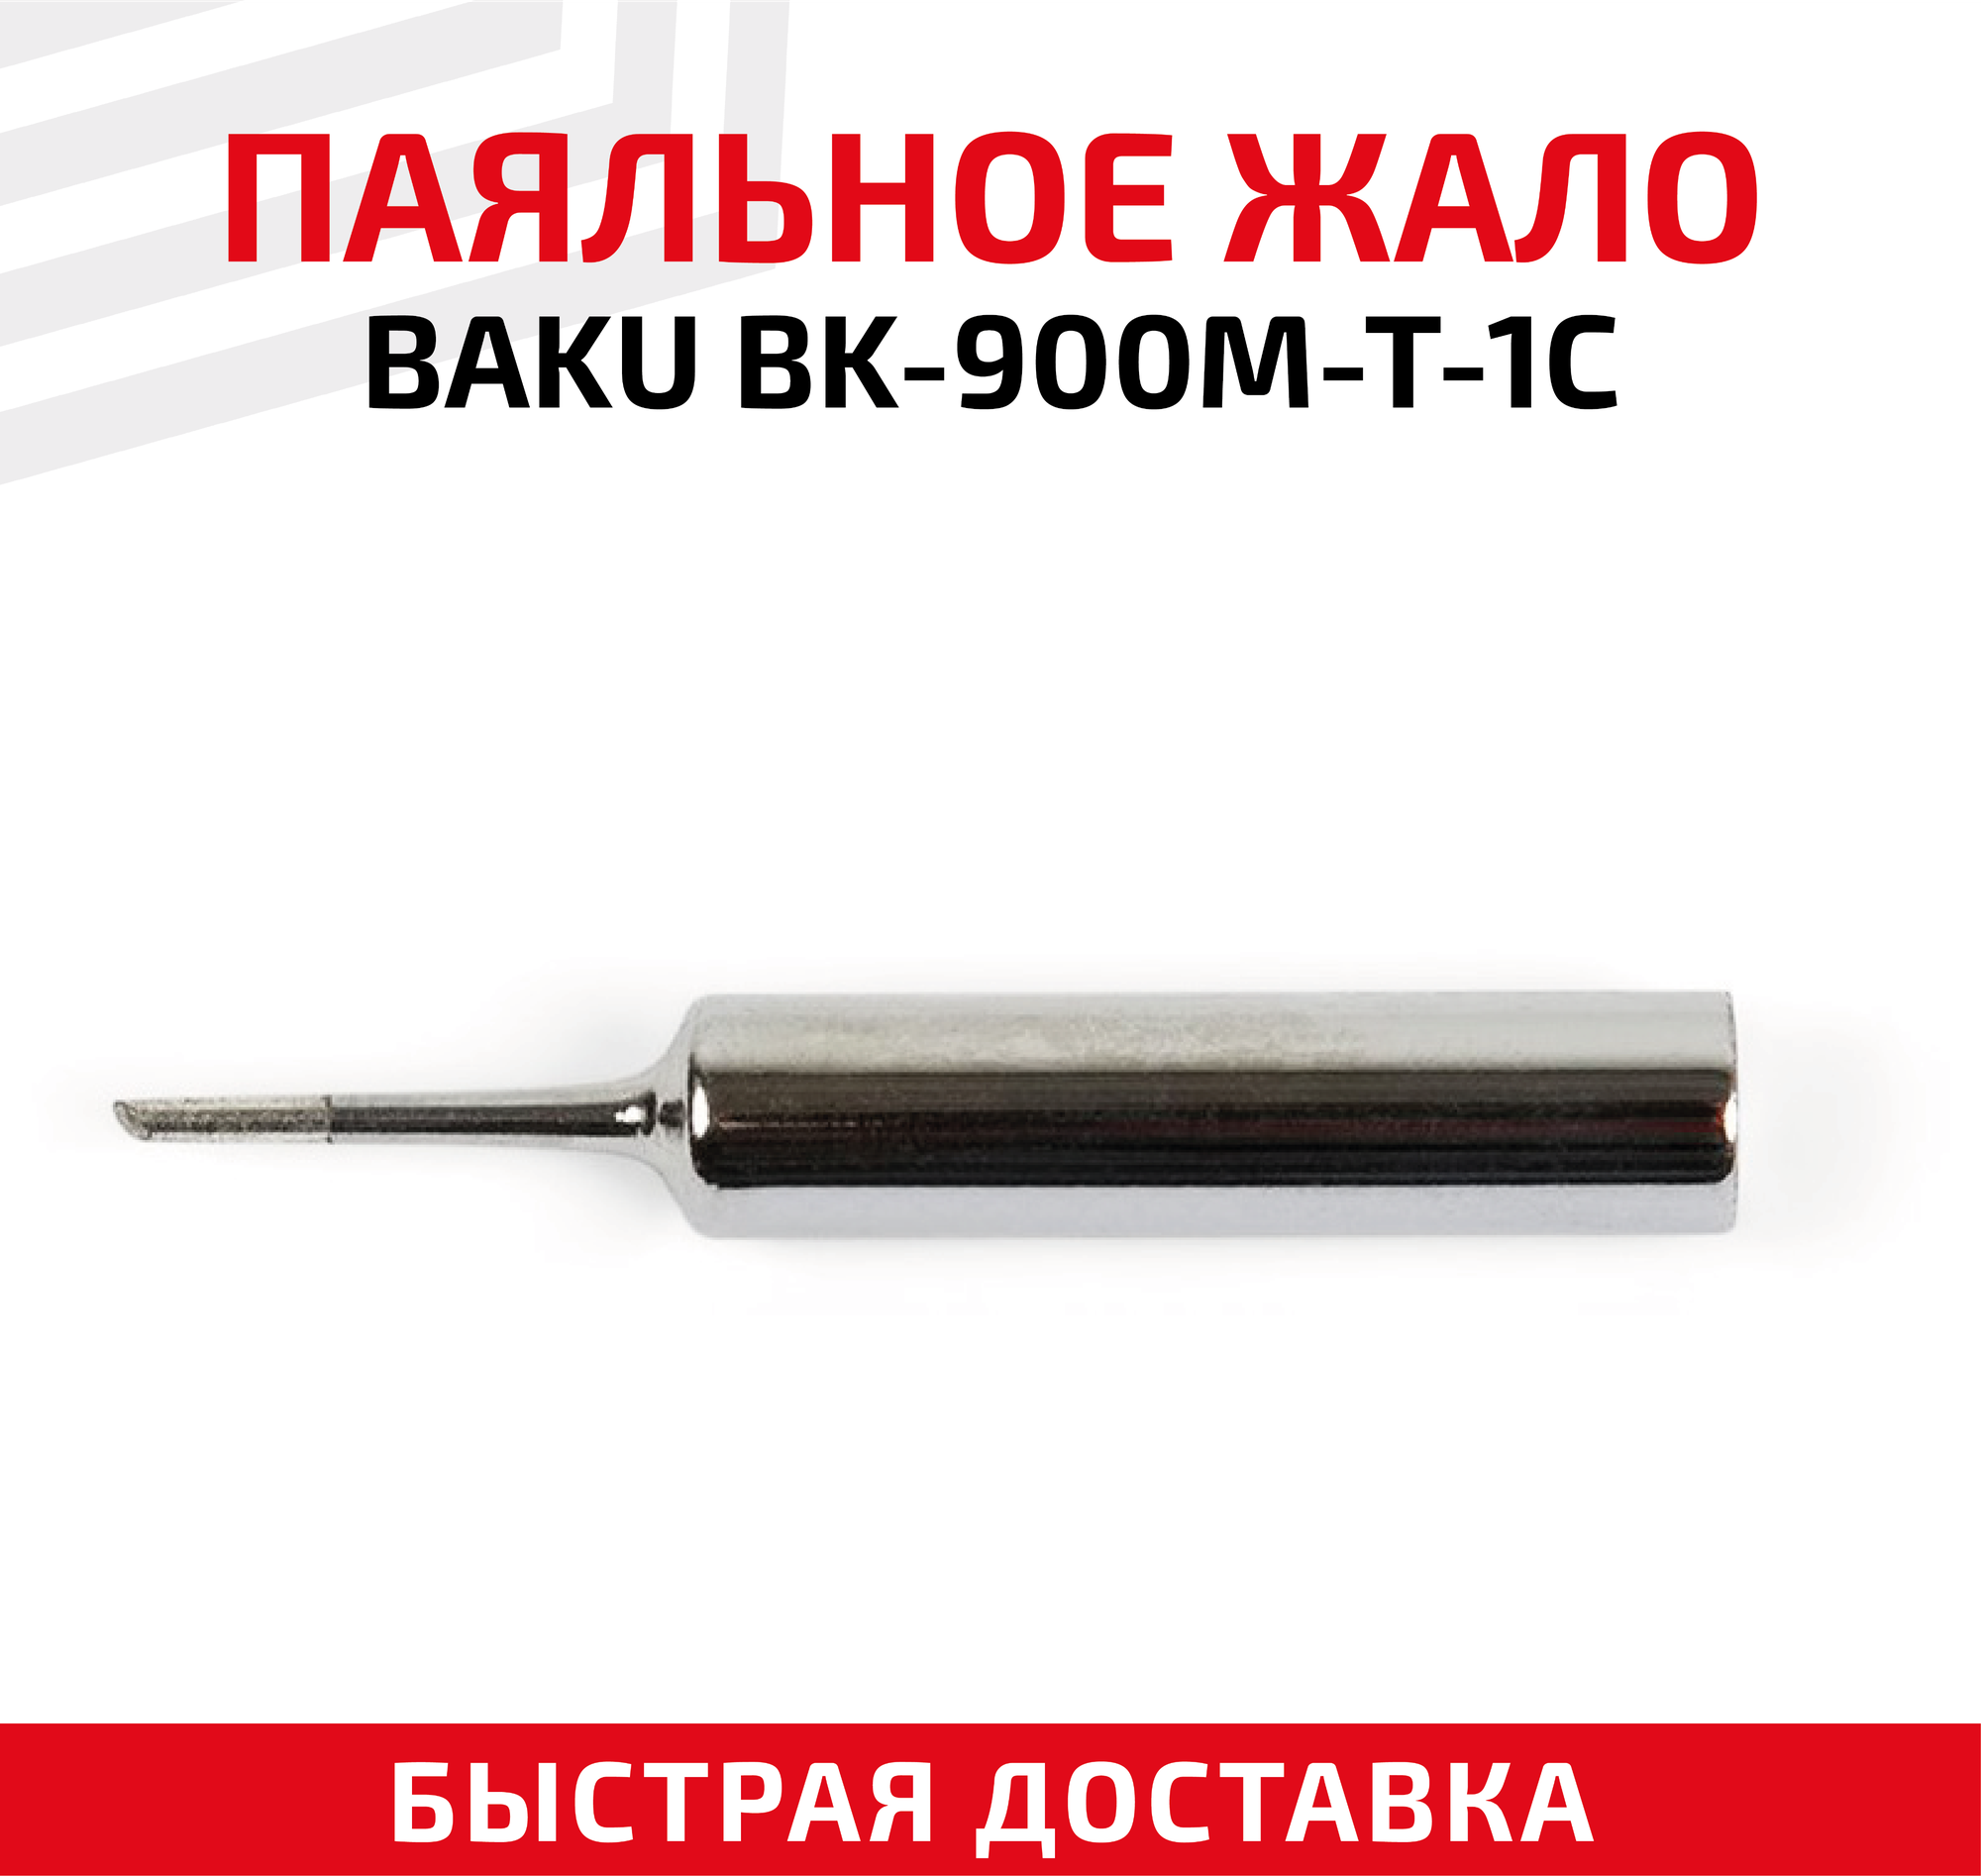 Жало (насадка наконечник) для паяльника (паяльной станции) Baku BK-900M-T-1C со скосом 1 мм